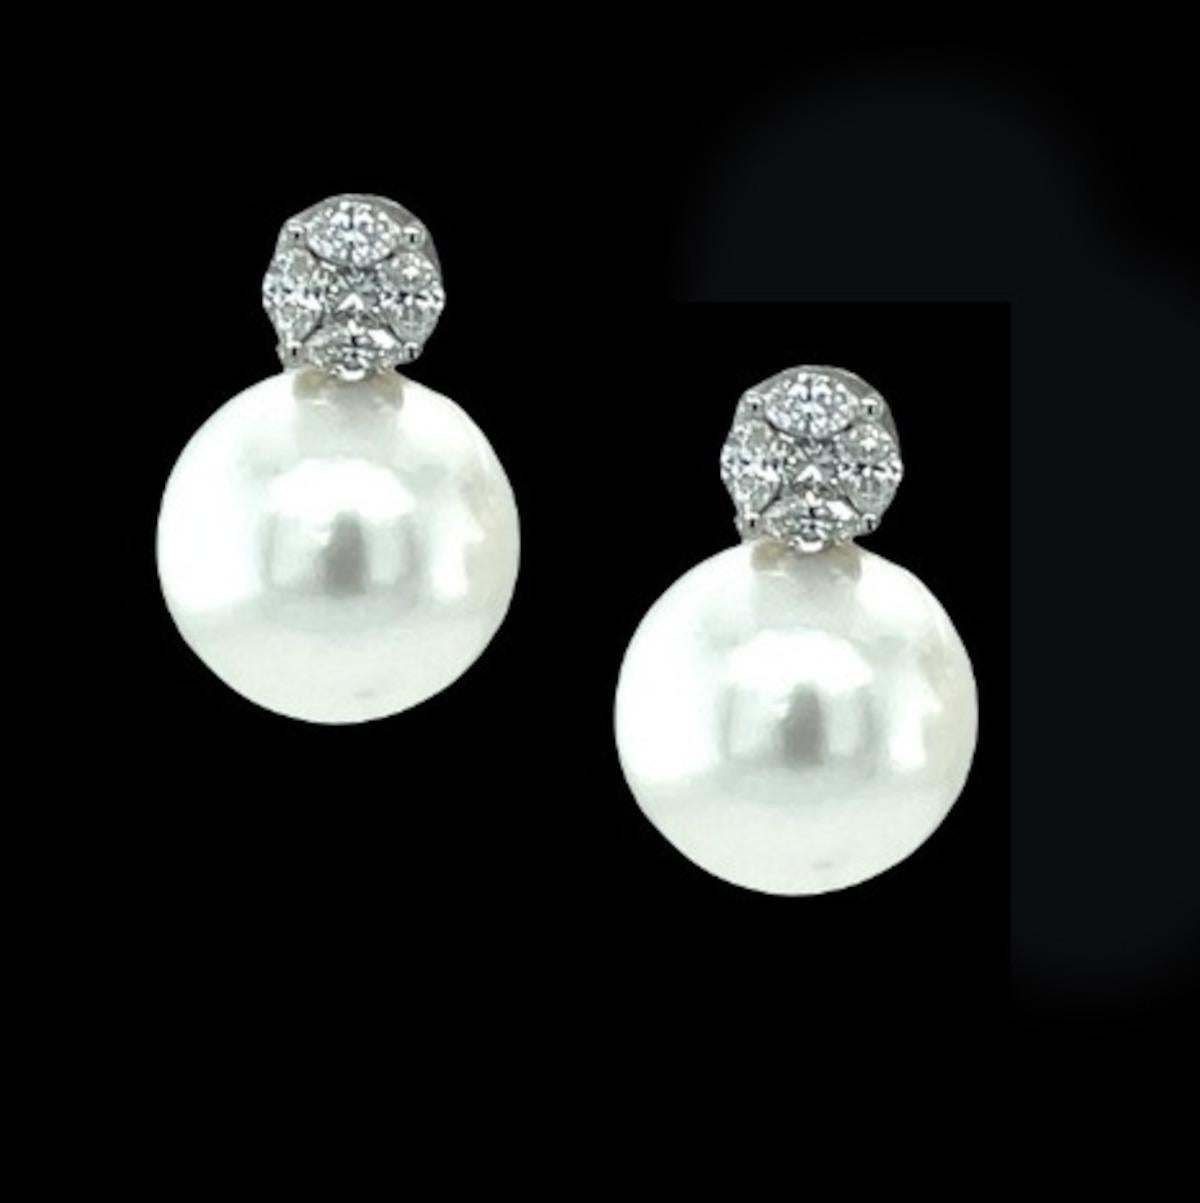 Ces élégantes boucles d'oreilles en perles des mers du Sud et diamants sont un classique intemporel pour toute collection de haute joaillerie. Les perles des mers du Sud de 11,50 mm sont stupéfiantes - parfaitement rondes et sans défaut, avec un